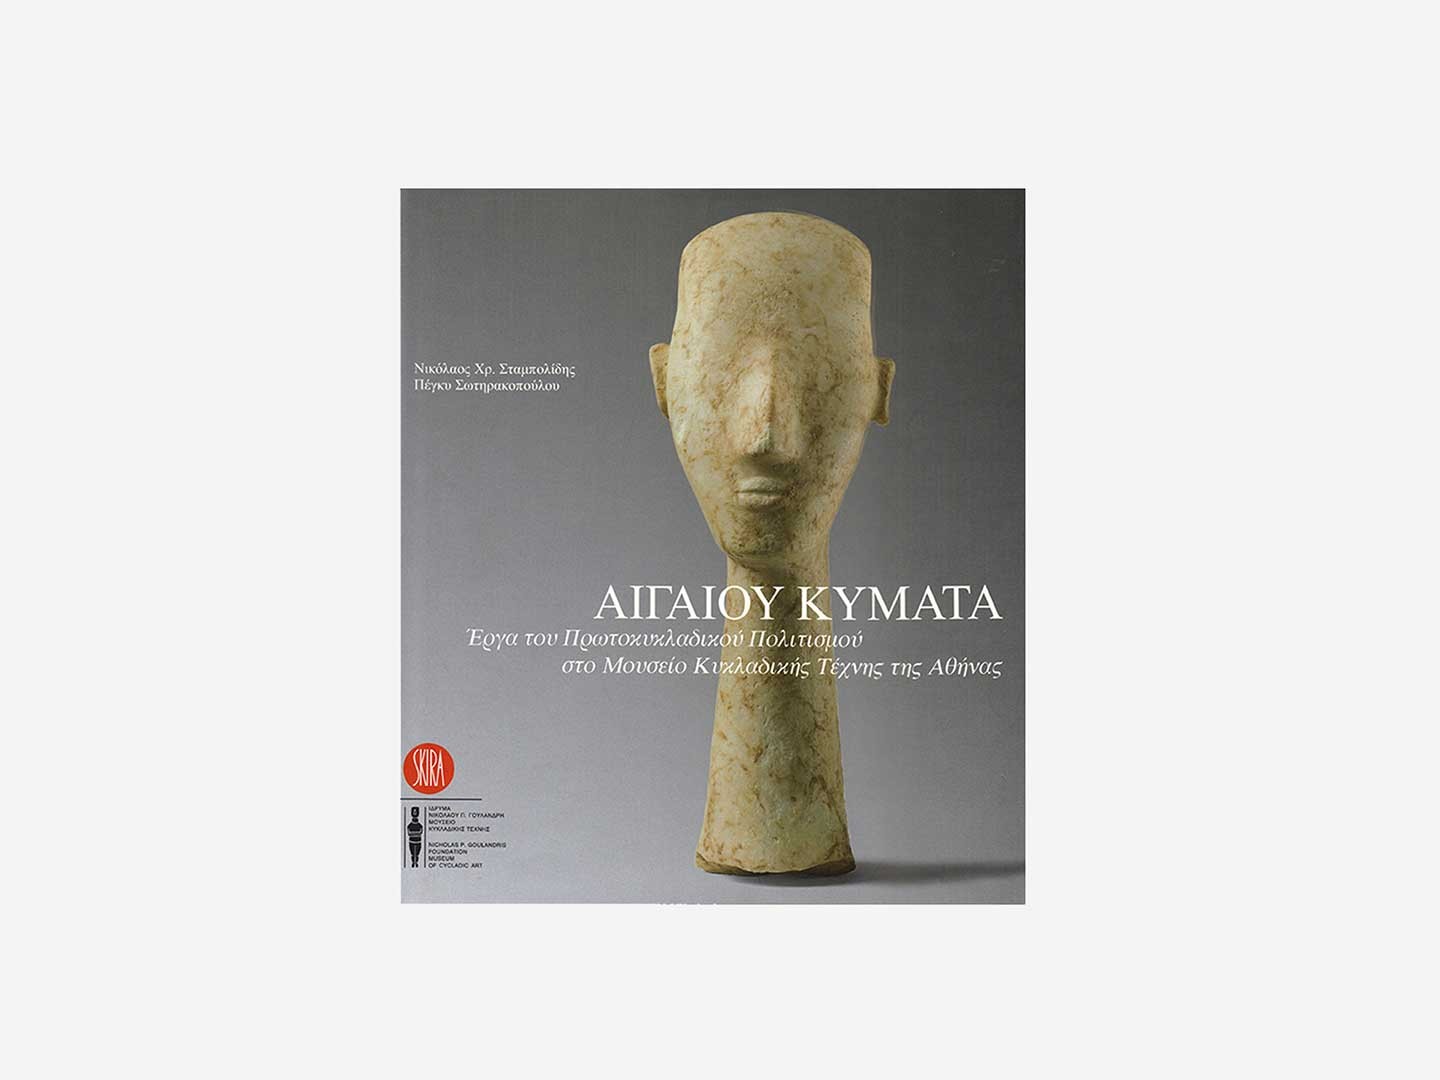 Αιγαίου Κύματα. Έργα του Πρωτοκυκλαδικού πολιτισμού στο Μουσείο Κυκλαδικής Τέχνης της Αθήνας – Σκληρό Εξώφυλλο